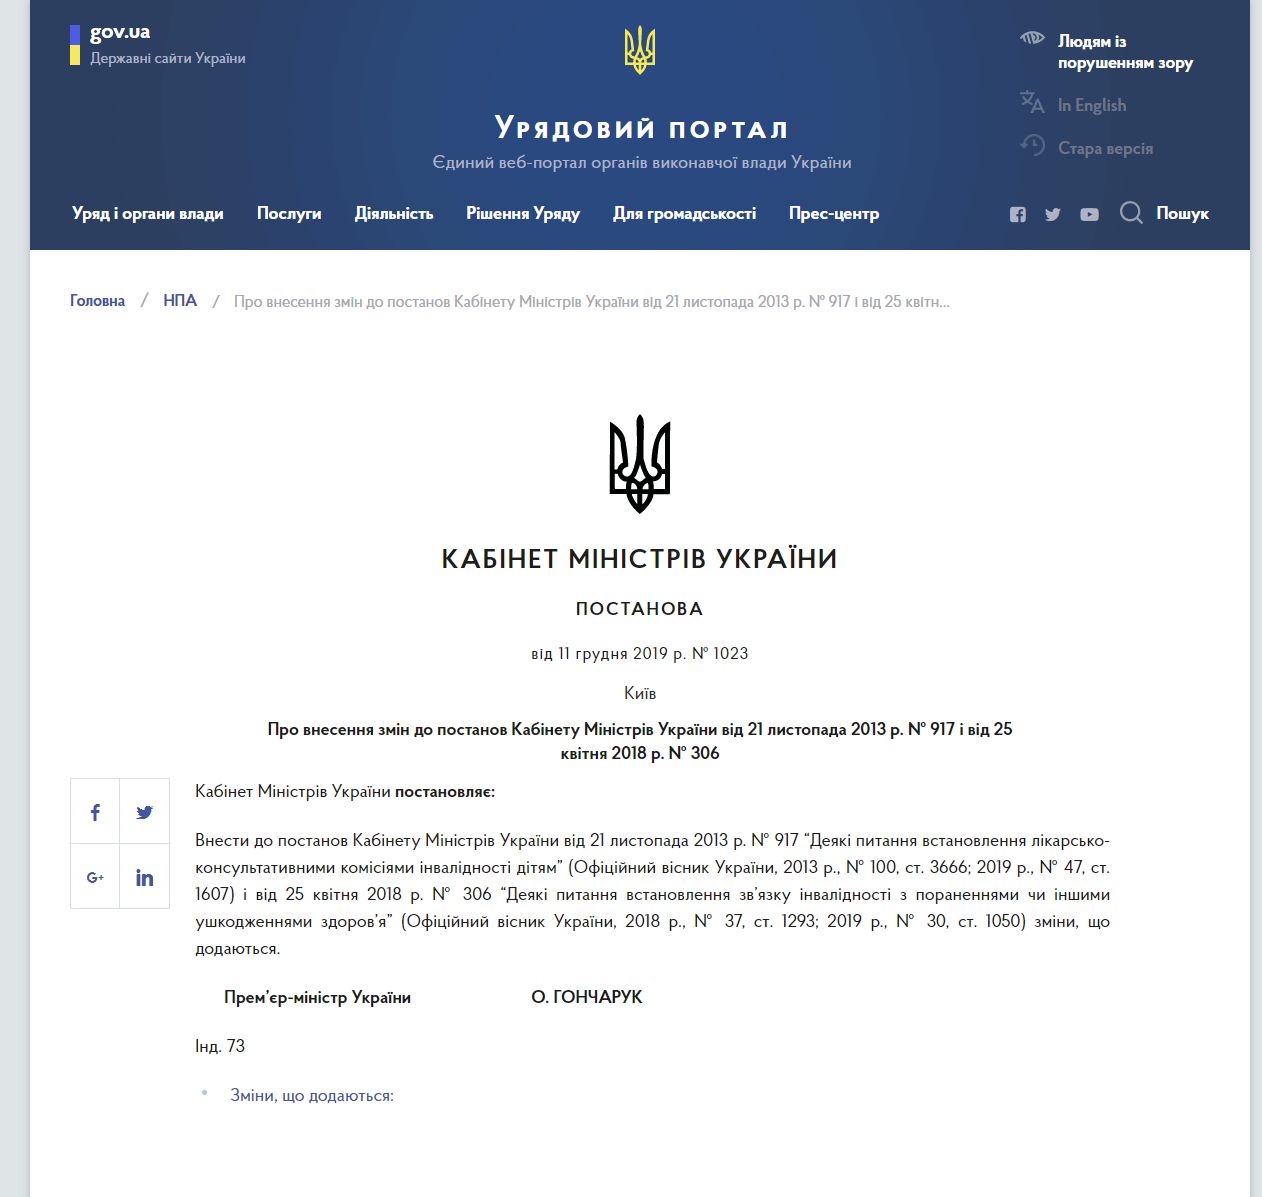 https://www.kmu.gov.ua/npas/pro-vnesennya-zmin-do-postanov-kabinetu-ministriv-ukrayini-vid-21-listopada-2013-r-917-i-vid-25-kvitnya-2018-r-306-i111219